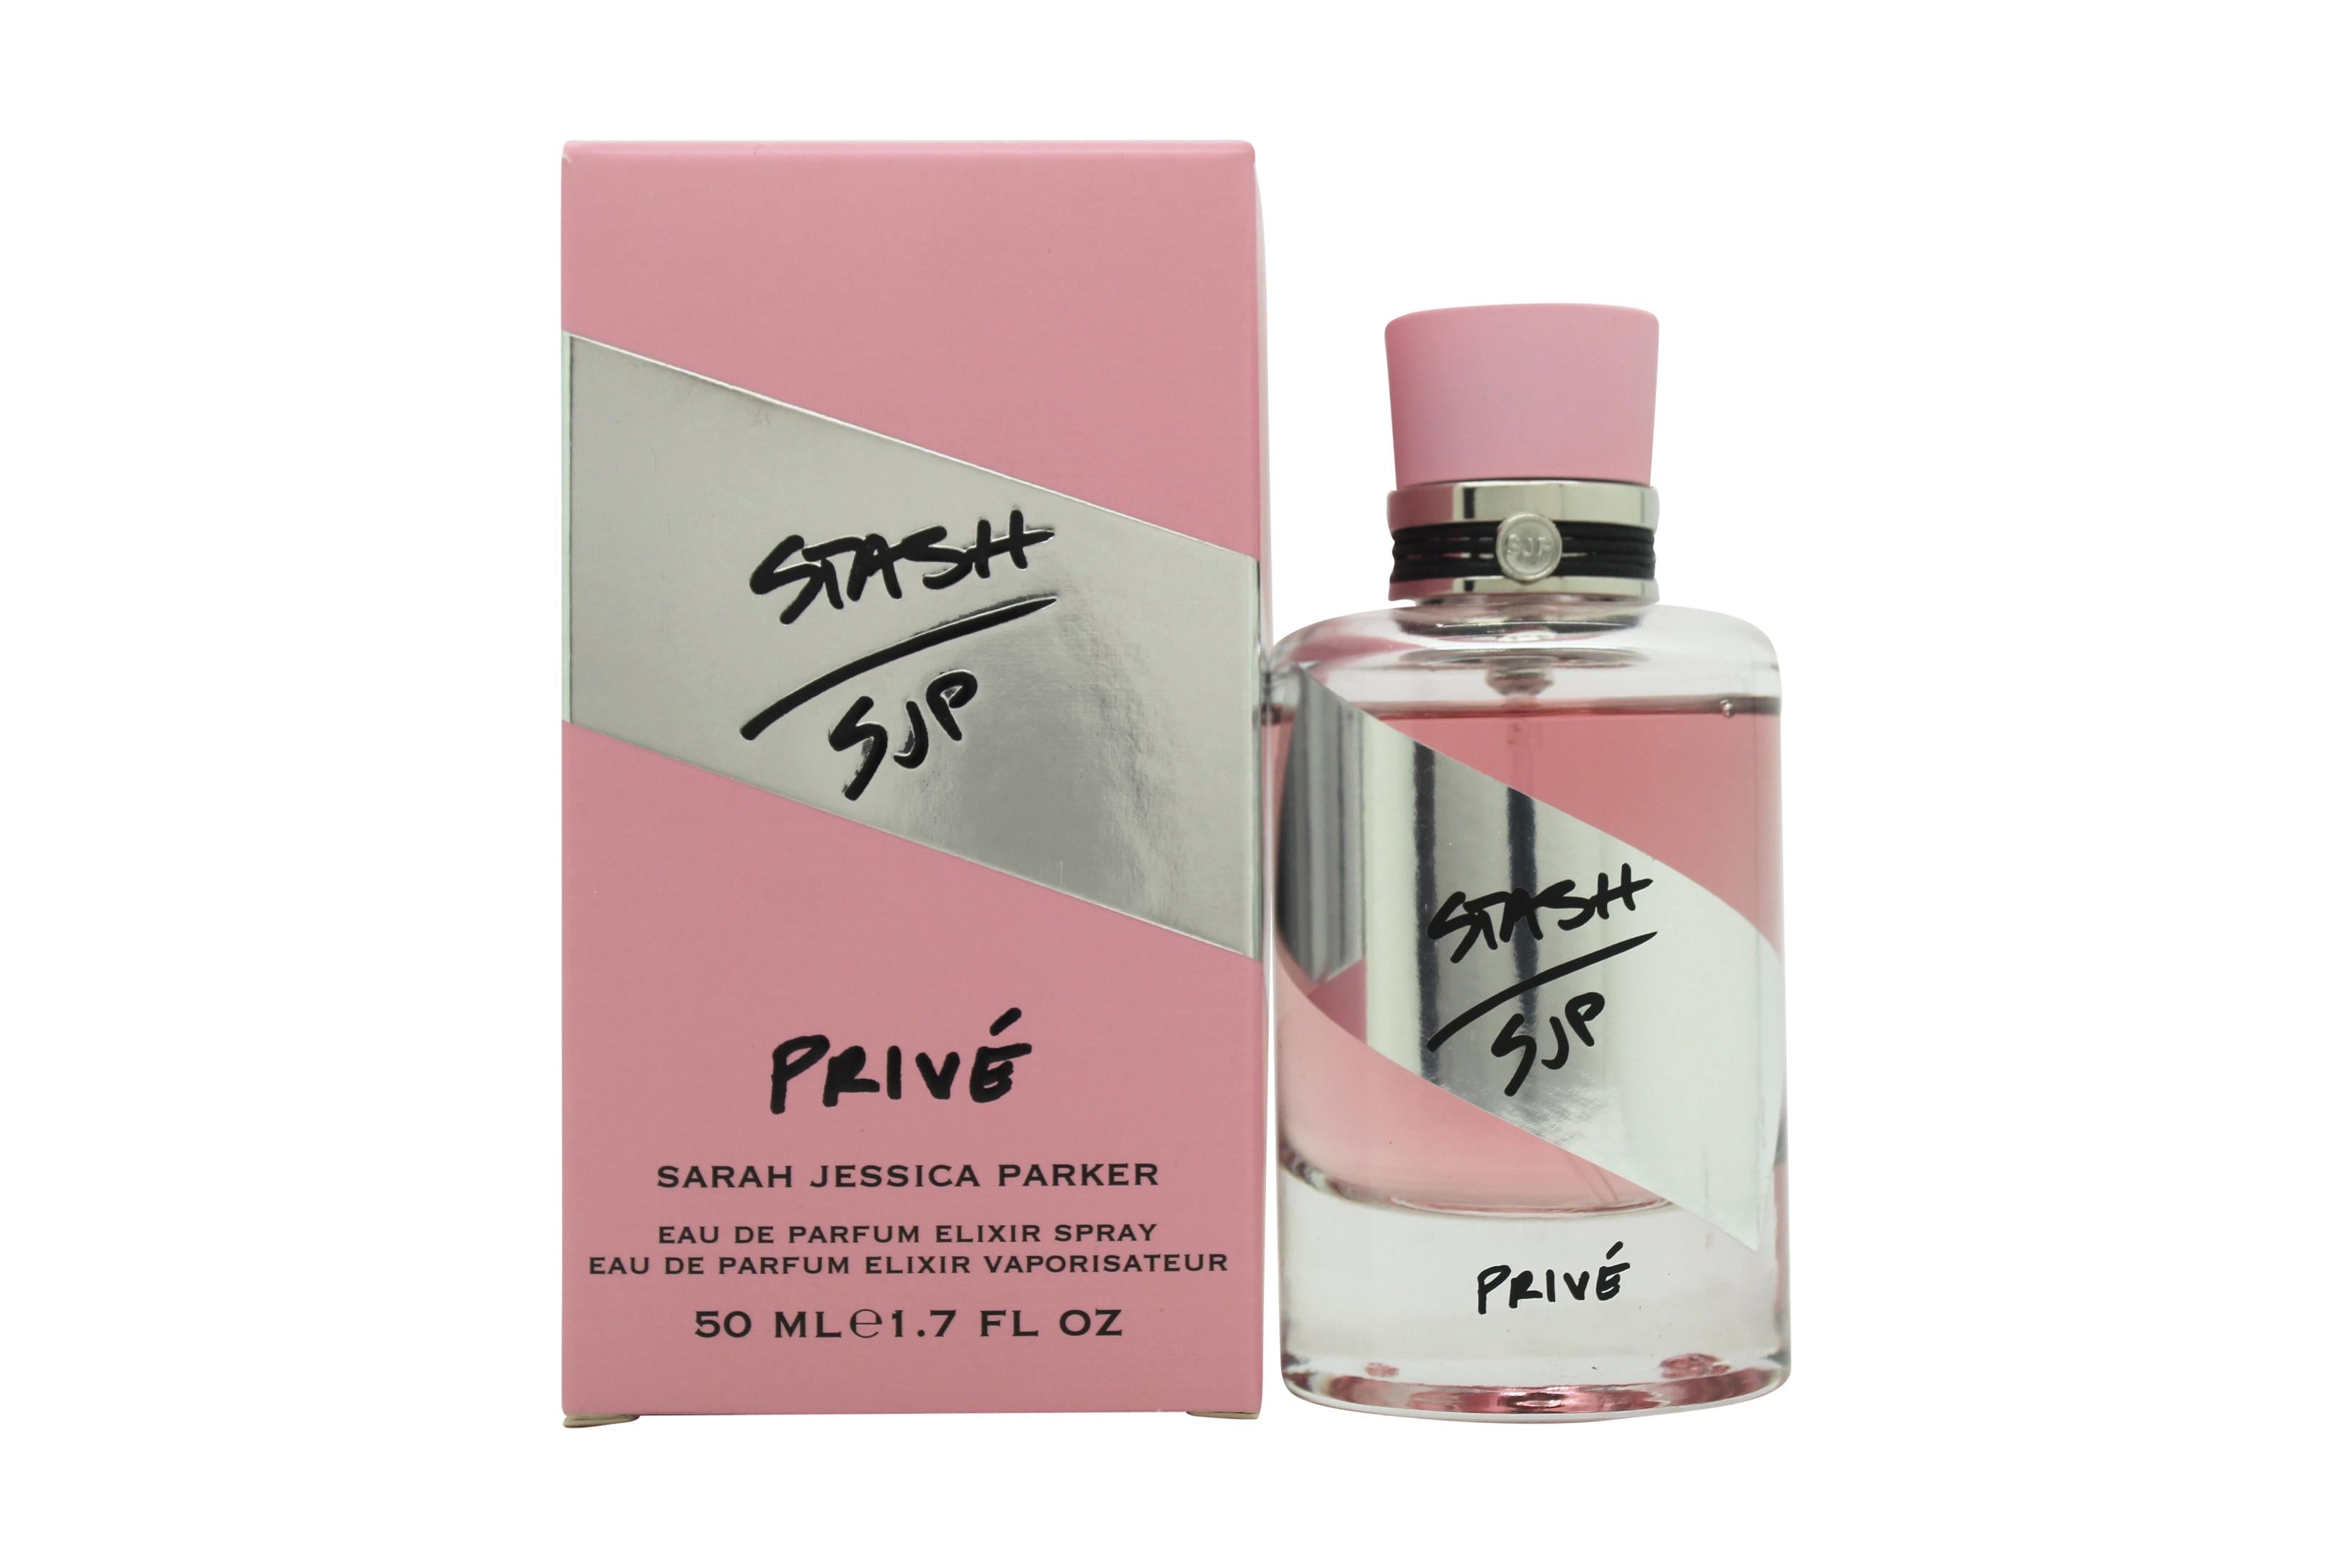 View Sarah Jessica Parker Stash Privé Eau de Parfum 50ml Spray information